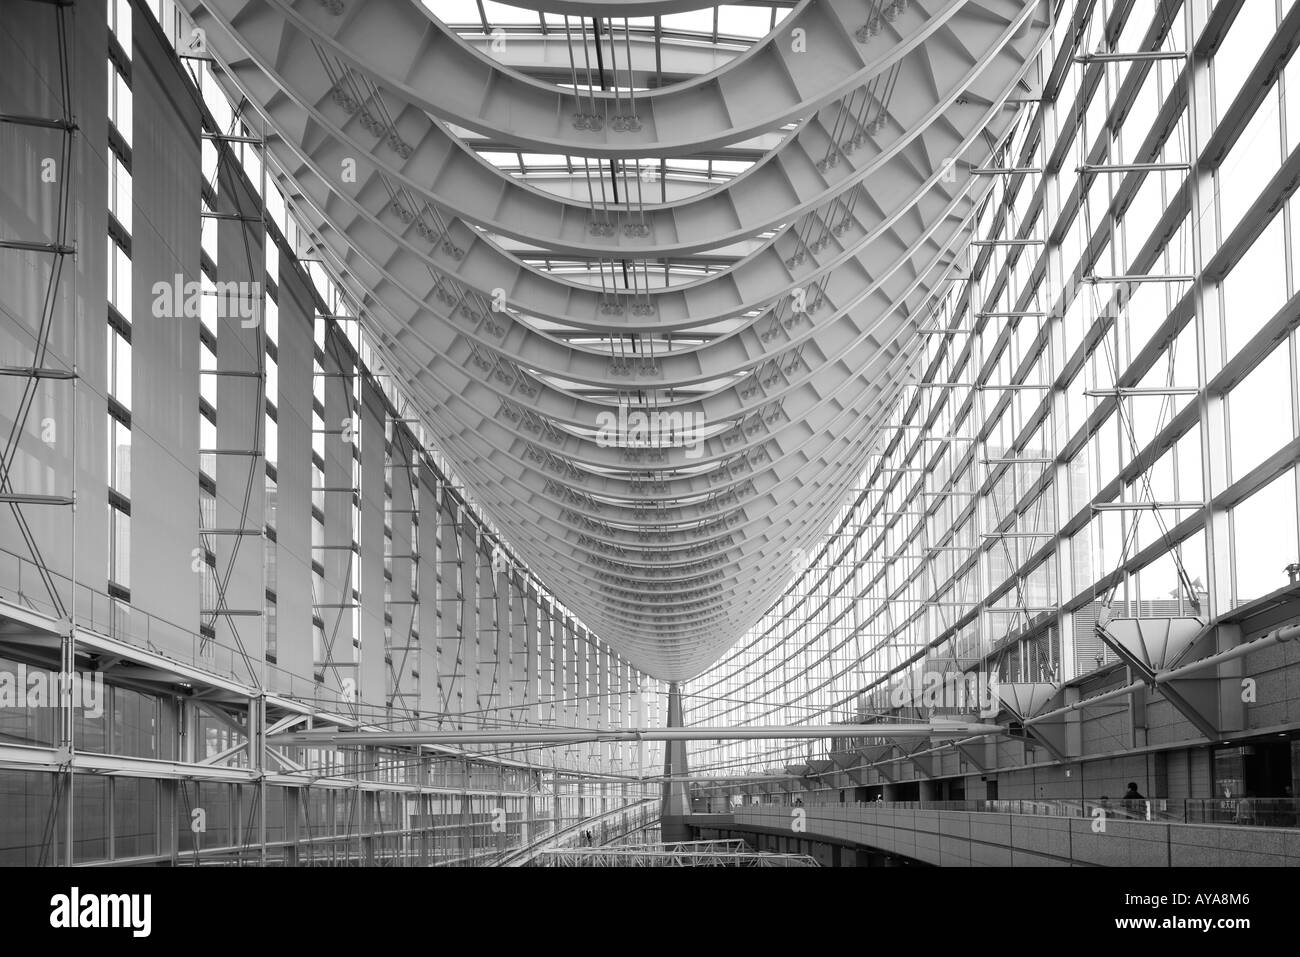 Asie Japon Tokyo vue de l'intérieur de l'hôtel de verre s'architecture moderne au Tokyo International Forum Banque D'Images